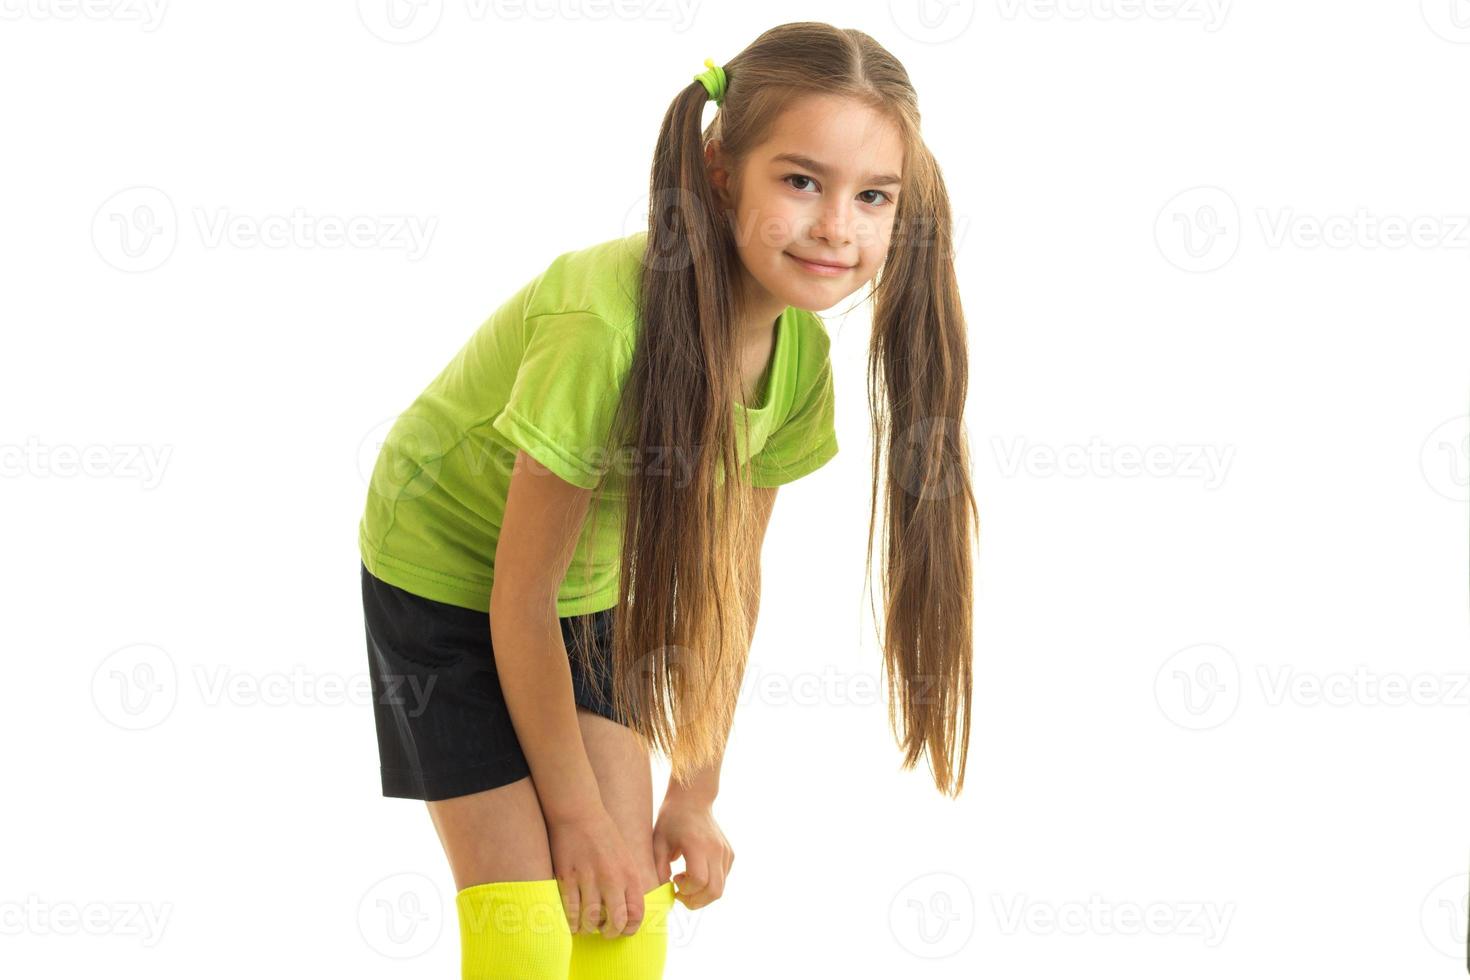 jolie fille en uniforme de football vert posant devant la caméra photo